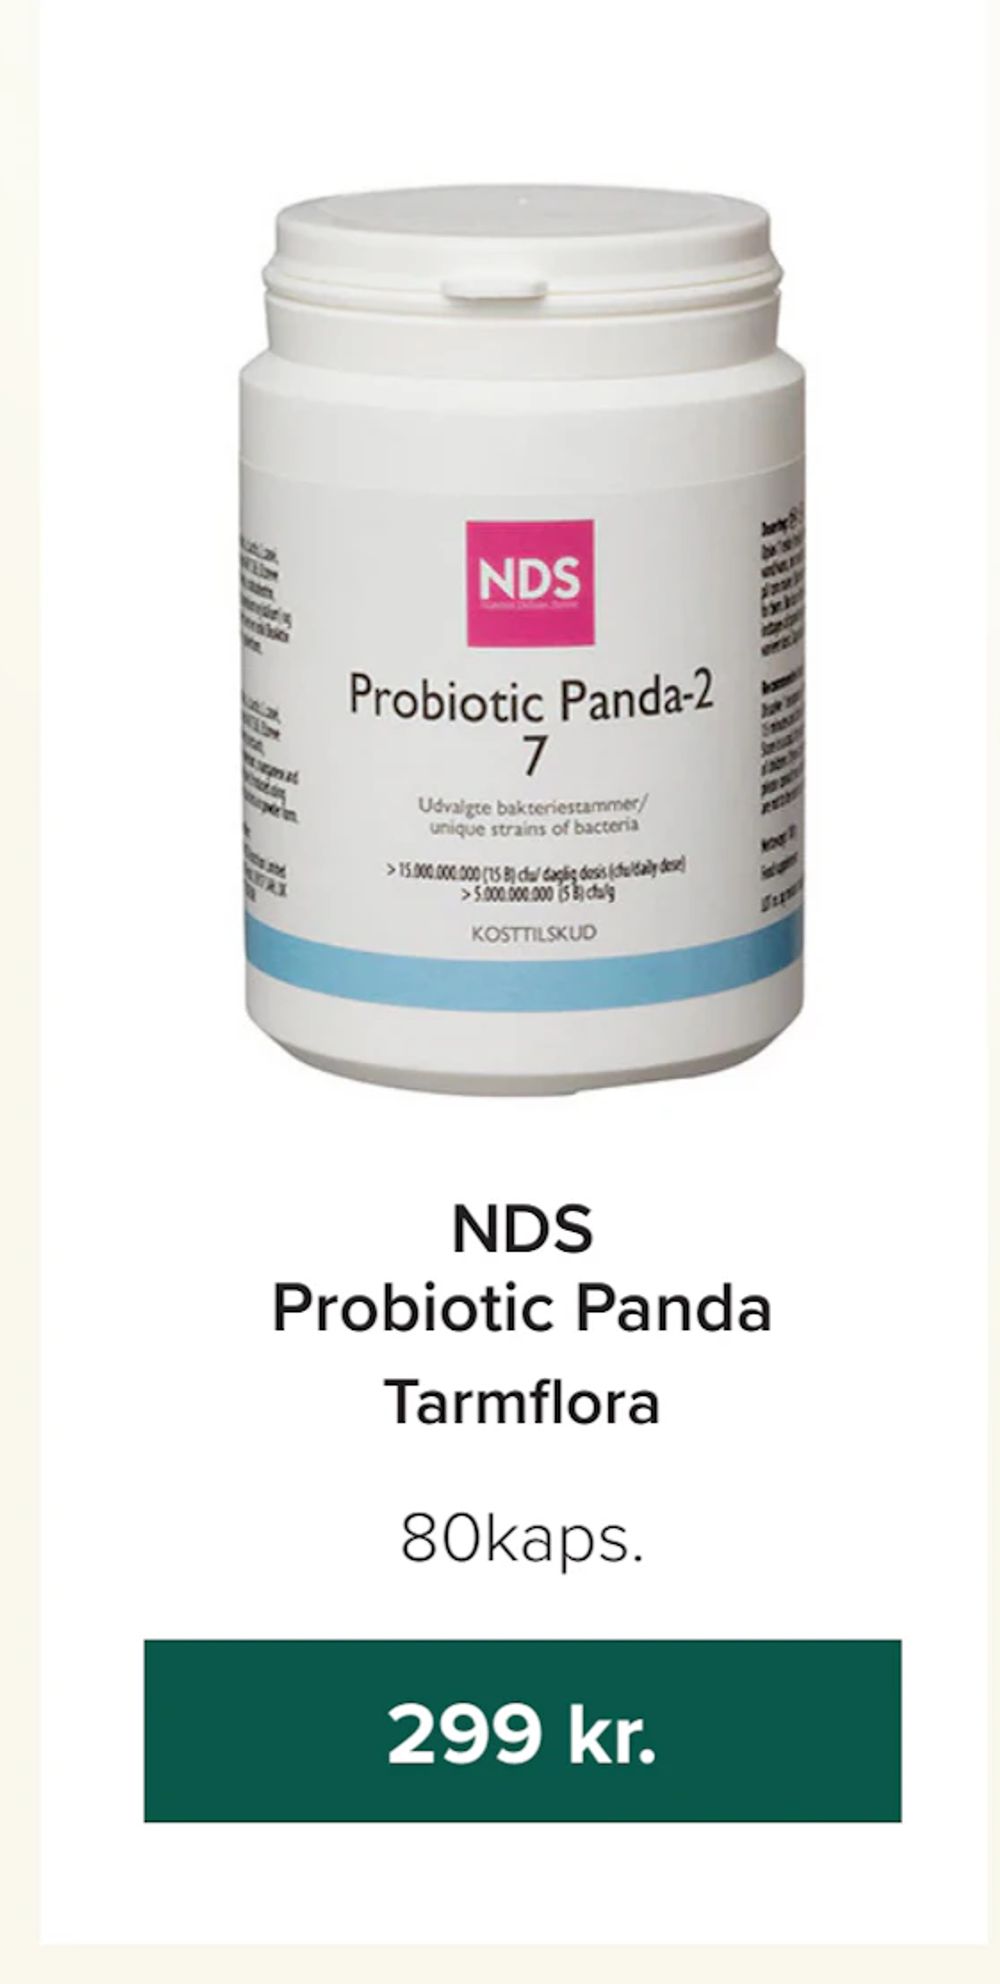 Tilbud på NDS Probiotic Panda fra Helsemin til 299 kr.